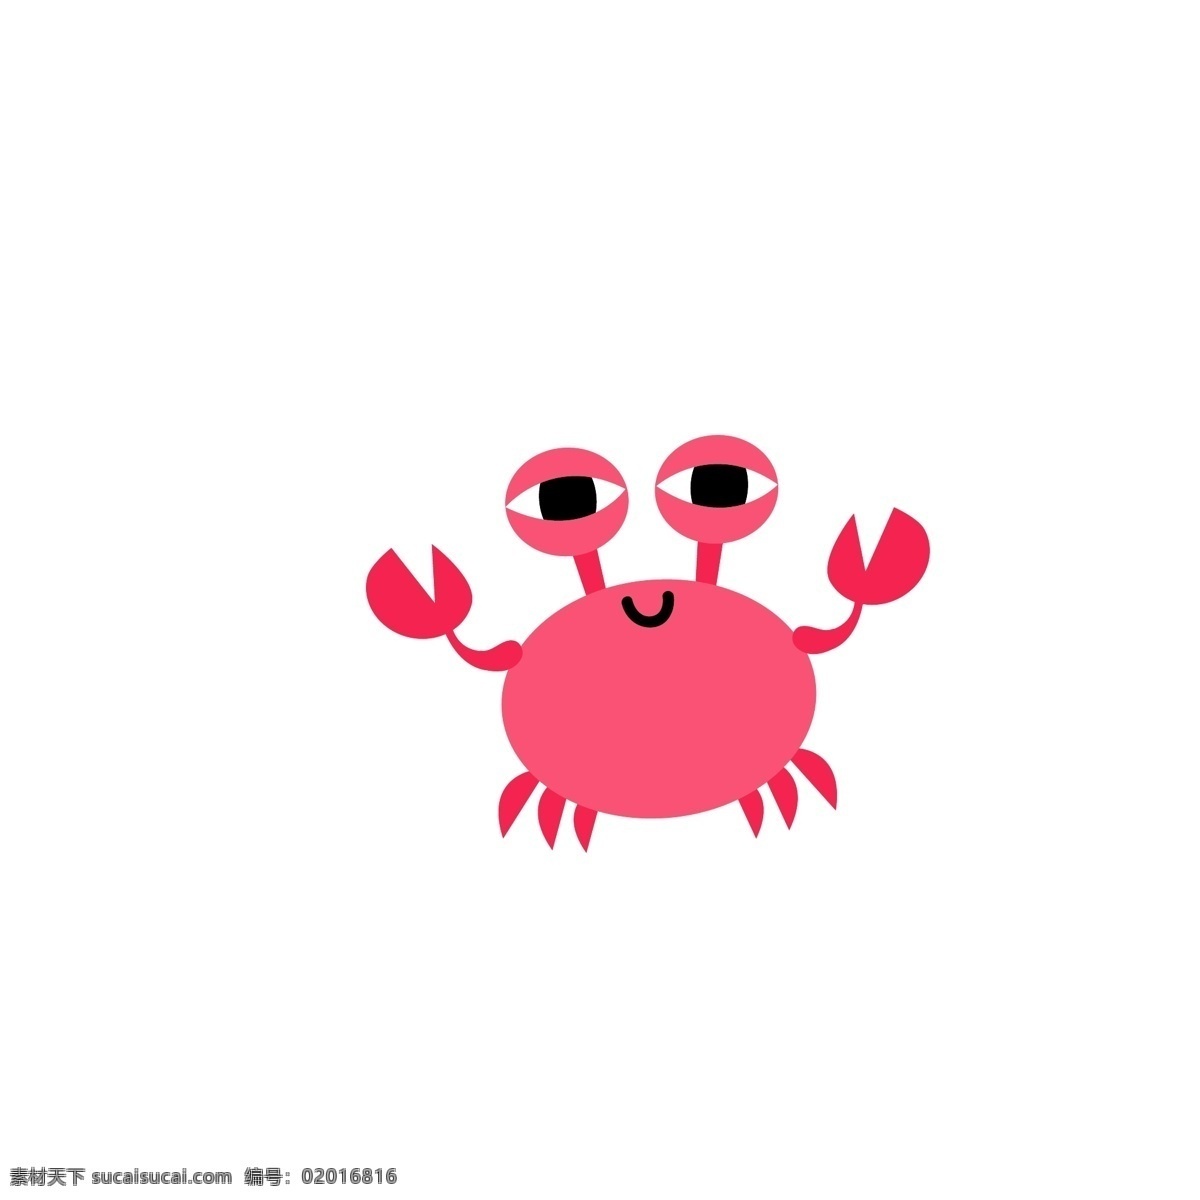 可爱 螃蟹 矢量 插画 水中生物 生物世界 红色螃蟹 卡通形象 矢量素材